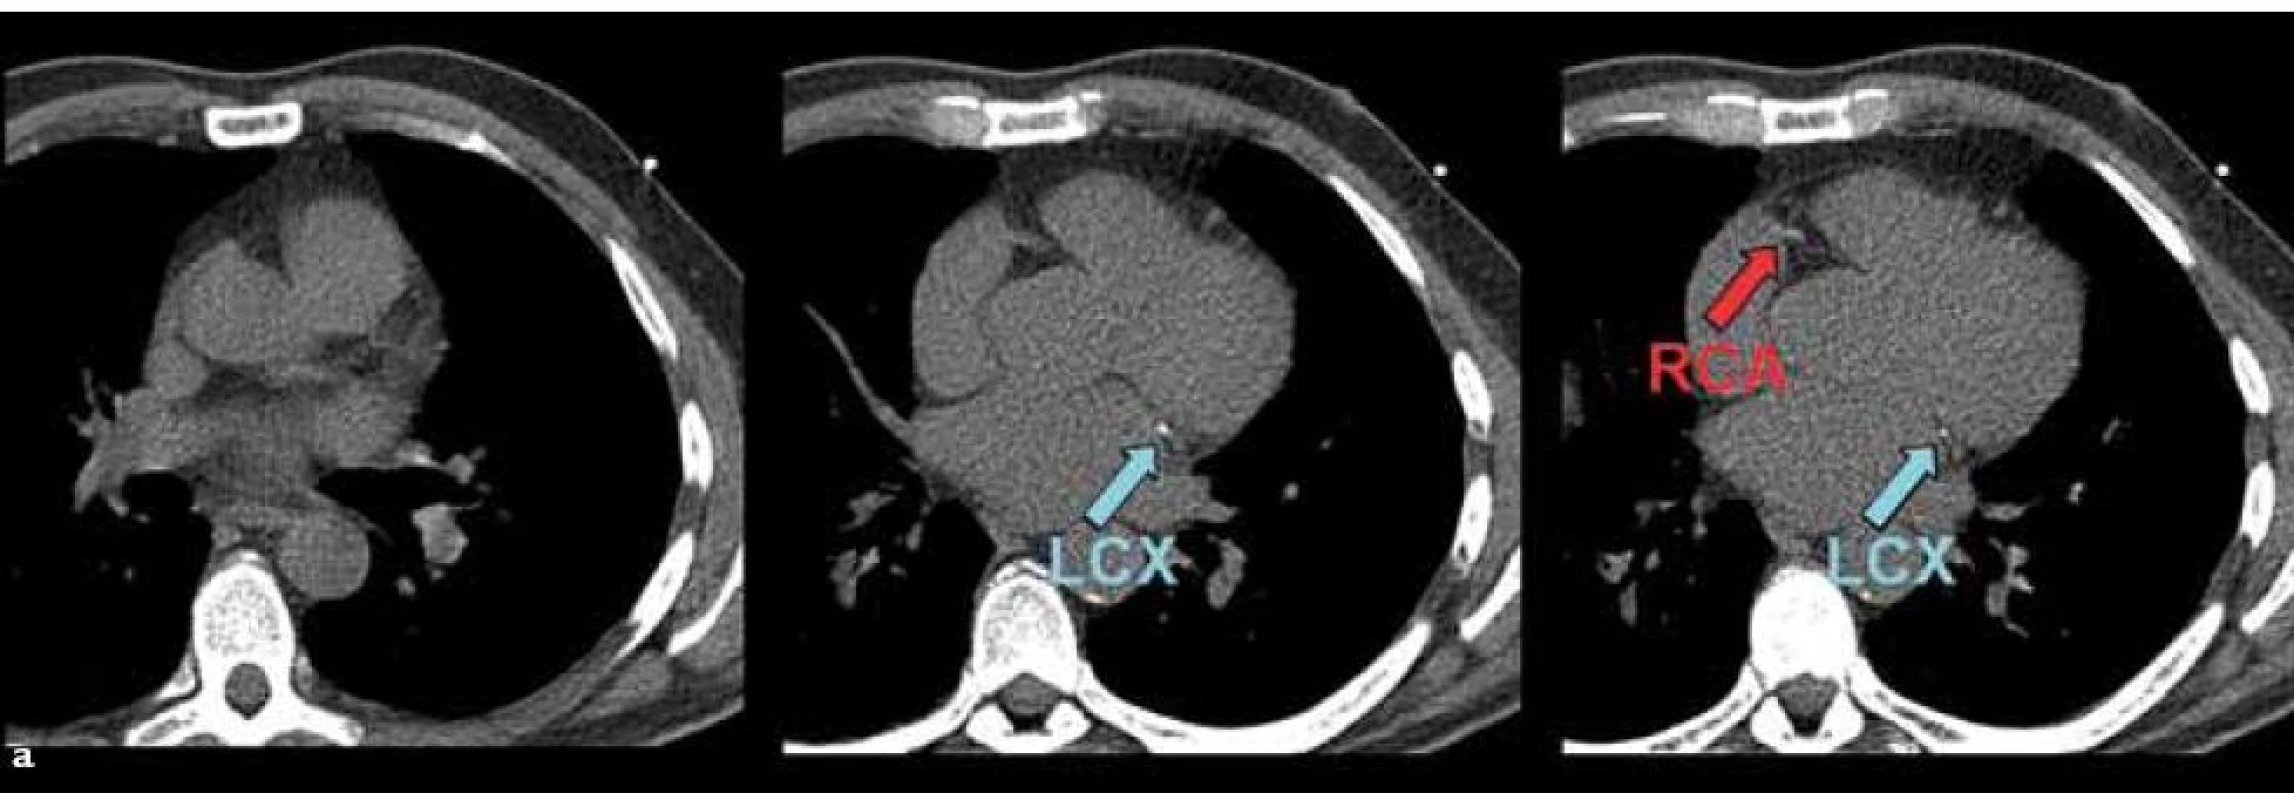 59letý diabetický pacient měl na CT (a) zobrazeny pouze drobné kalcifikace v povodí ramus circumflexus (left circumflex artery – LCX) a pravé koronární tepny (right coronary artery – RCA). Celkové kalciové skóre bylo jen mírně zvýšené na 56.